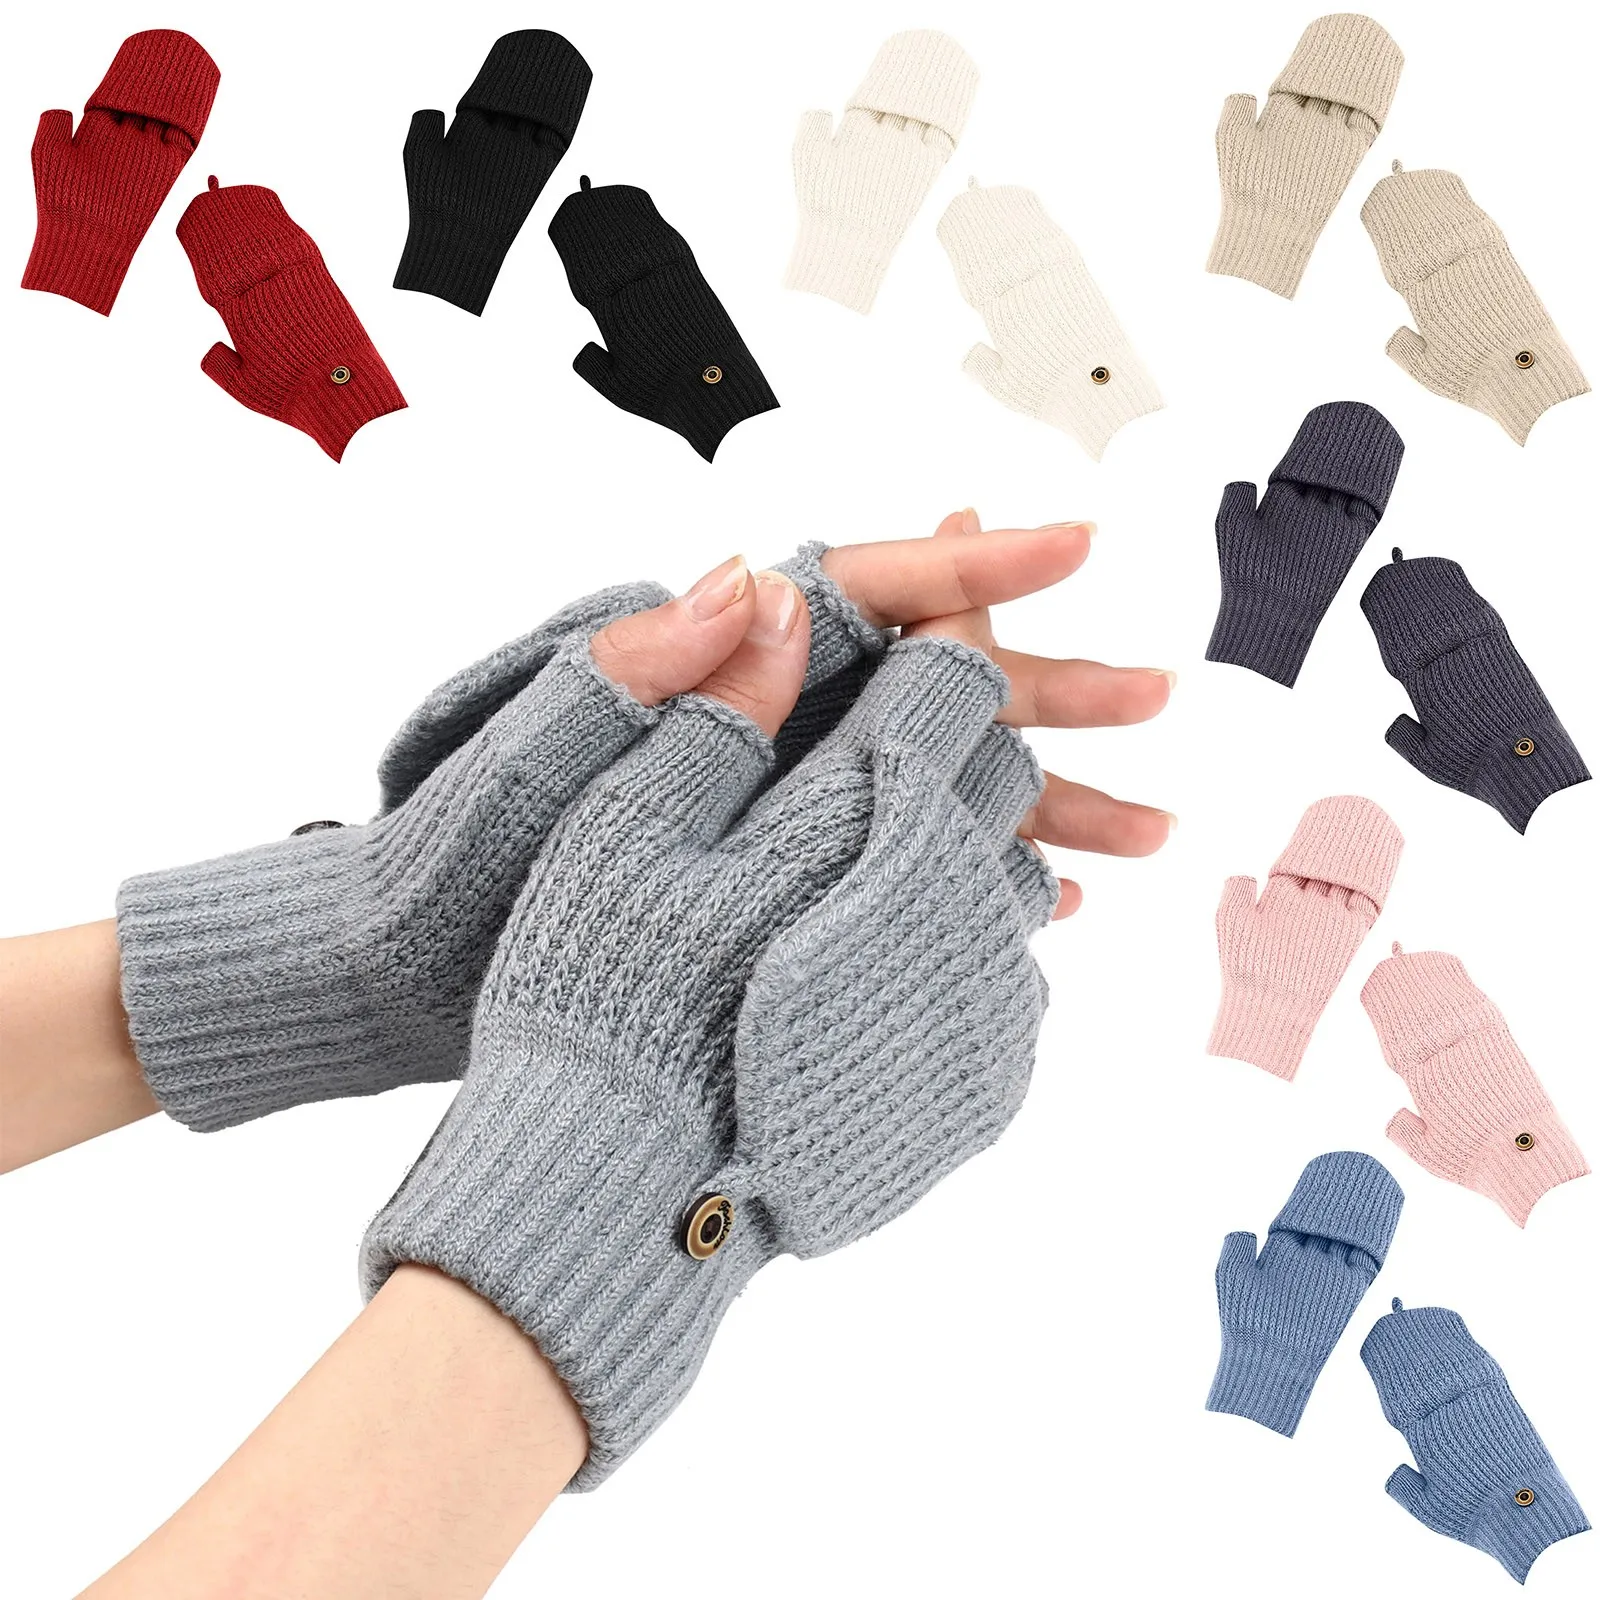 

Перчатки без пальцев для мужчин и женщин, шерстяные вязаные хлопковые митенки, теплые зимние перчатки для вождения, унисекс, 1 пара